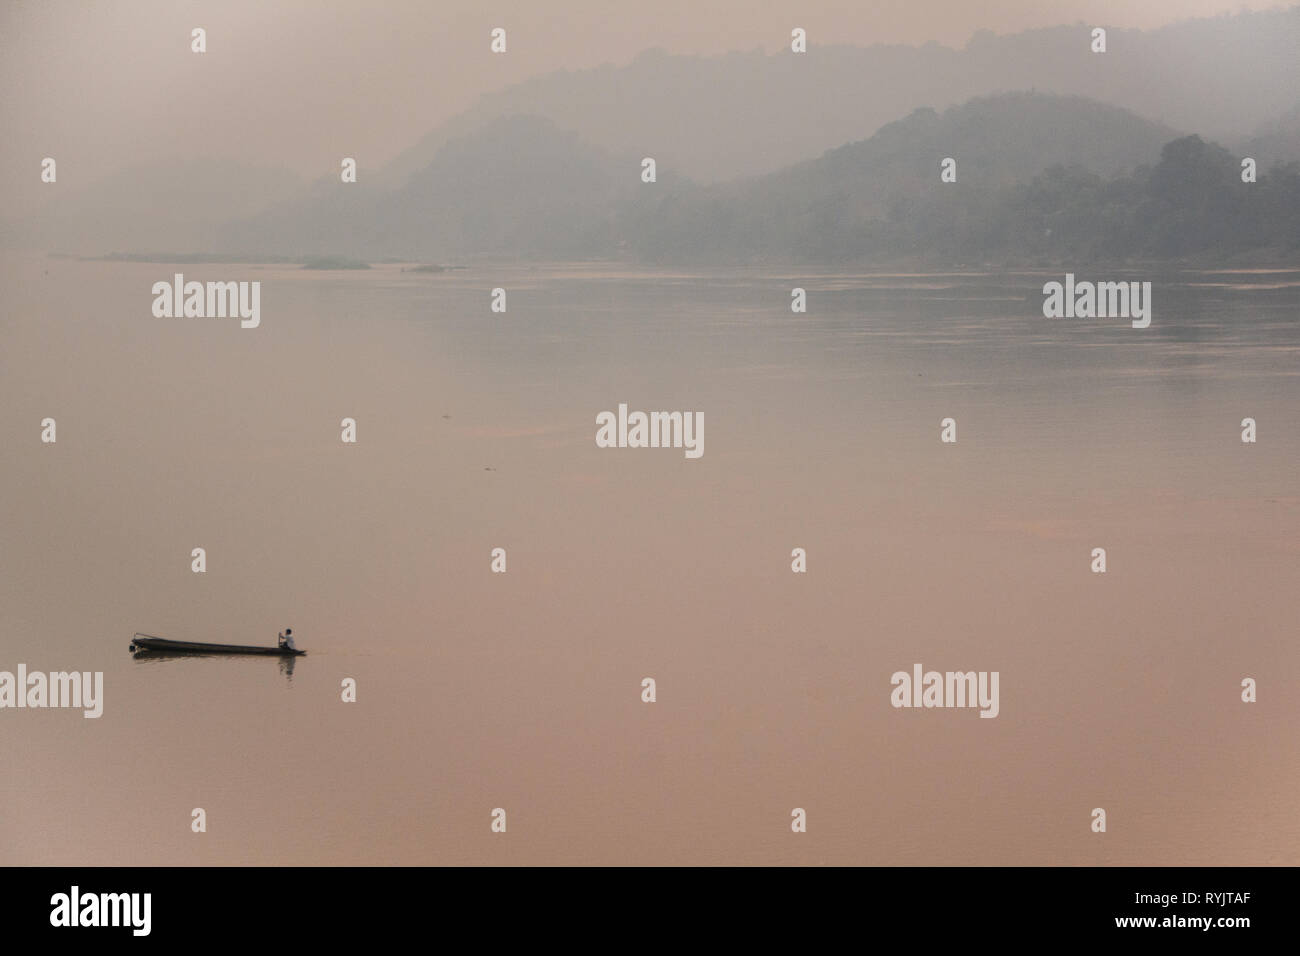 Perdu dans la brume sèche - Pêcheur sur son bateau sur le Mékong pendant la saison de gravure au Laos, brumeux, l'air de couleurs pastels. Banque D'Images